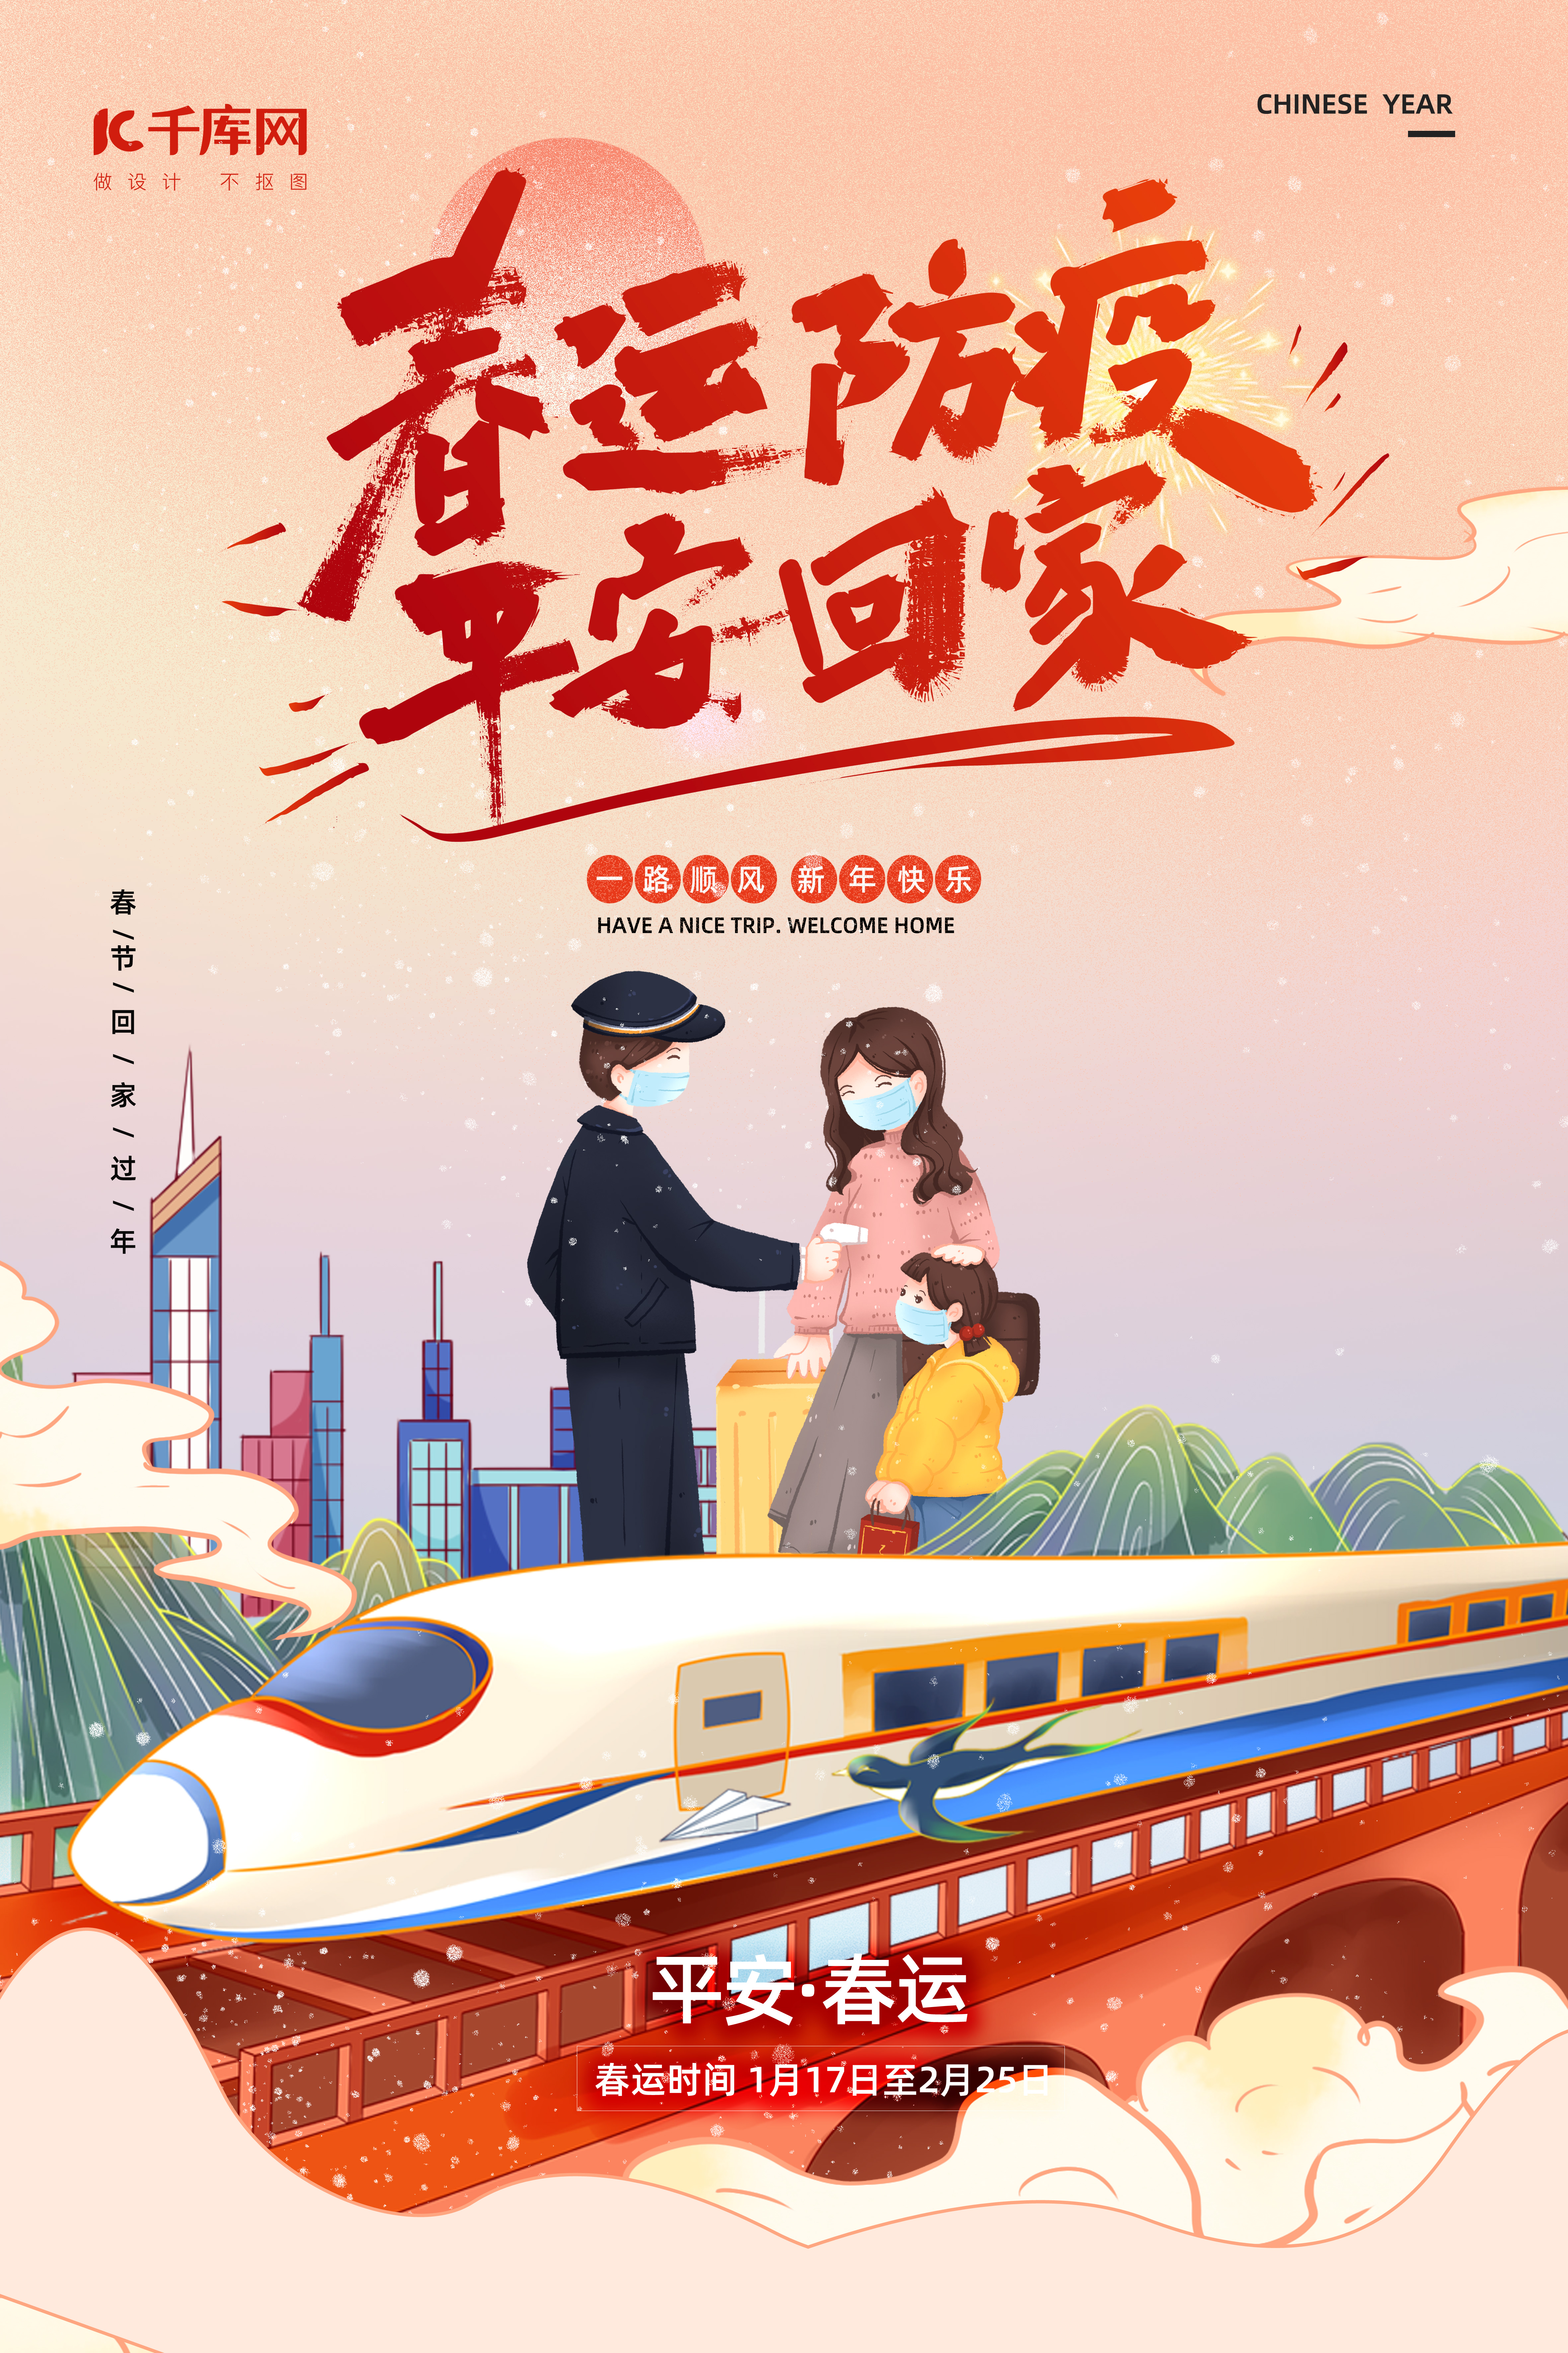 平安回家春节新年火车暖色渐变海报图片